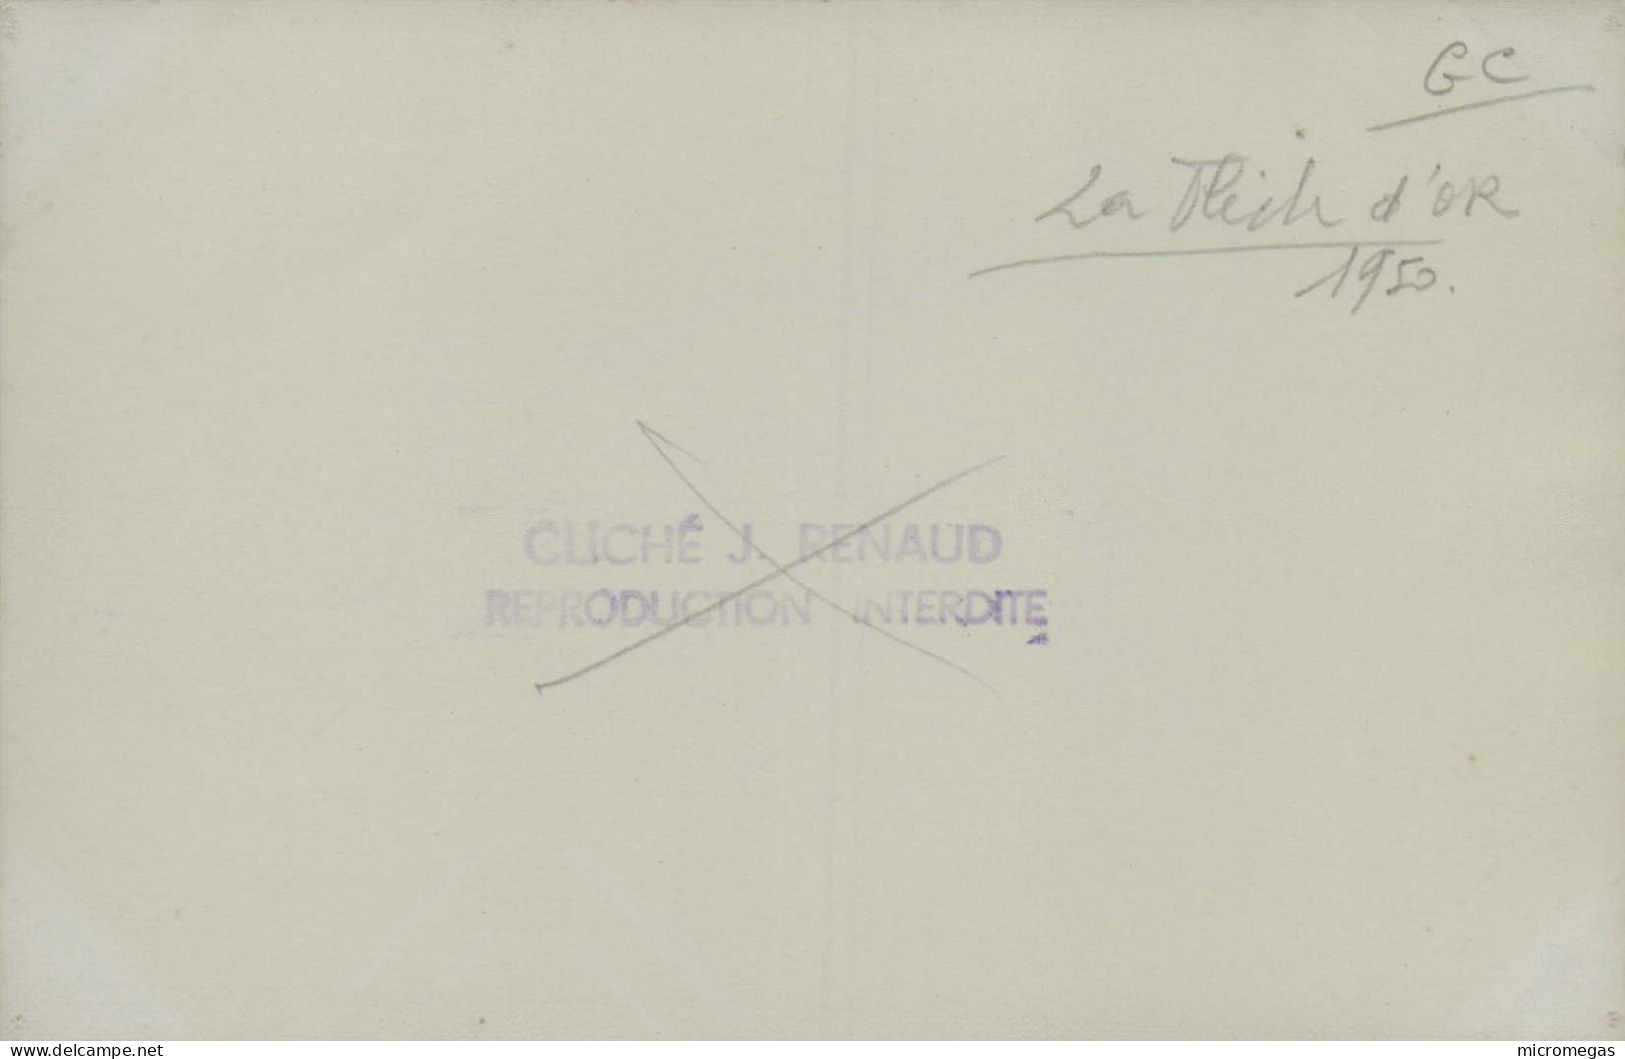 La Flèche D'Or - Cliché J. Renaud, 1950 - Treni